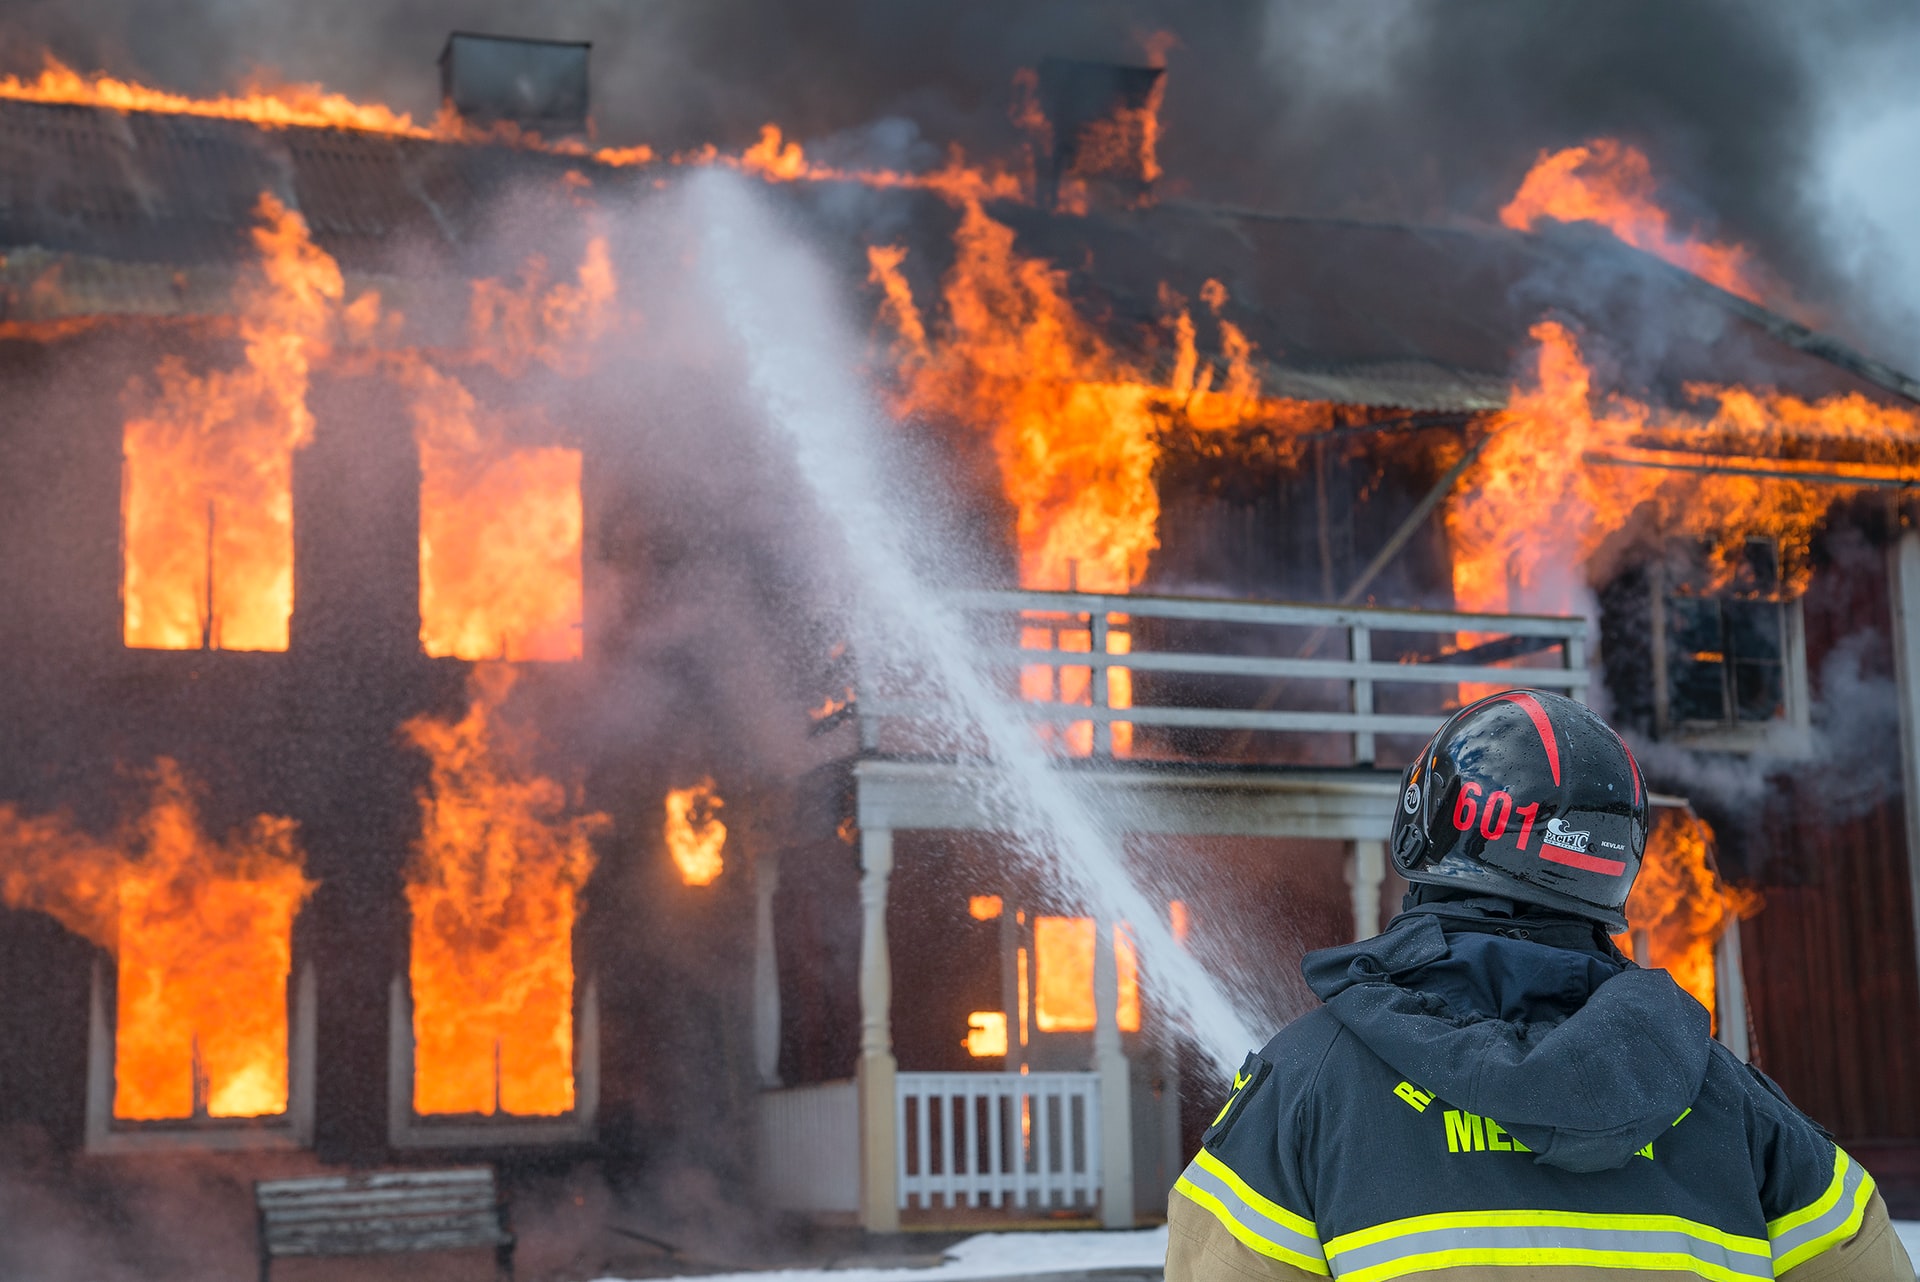  Quanti sono stati gli incendi delle case nel 2019?